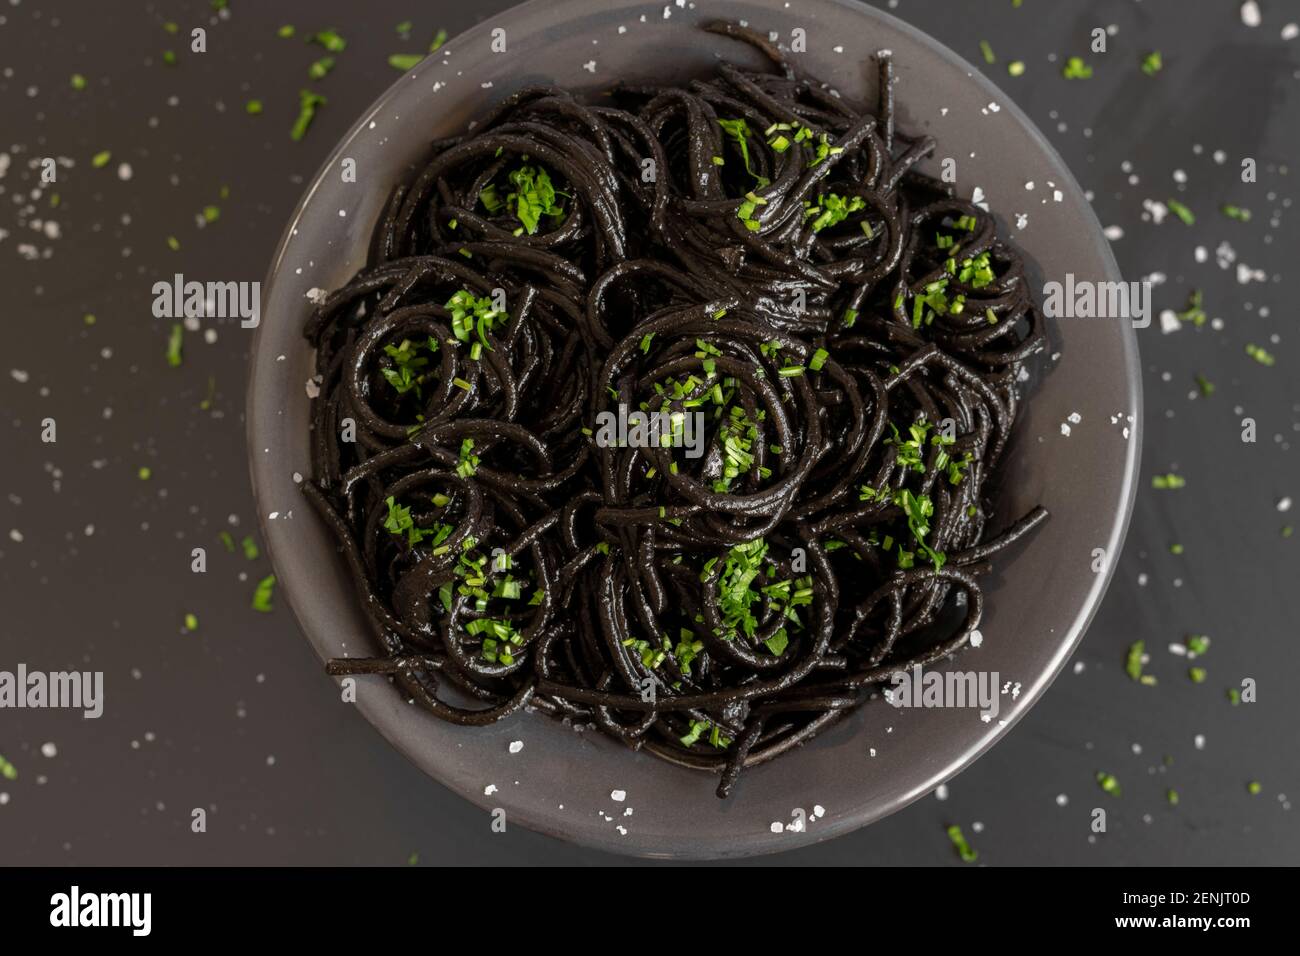 Spaghetti neri con inchiostro di seppie. Pasta di pesce nera su sfondo scuro. Gastronomia mediterranea. Foto Stock